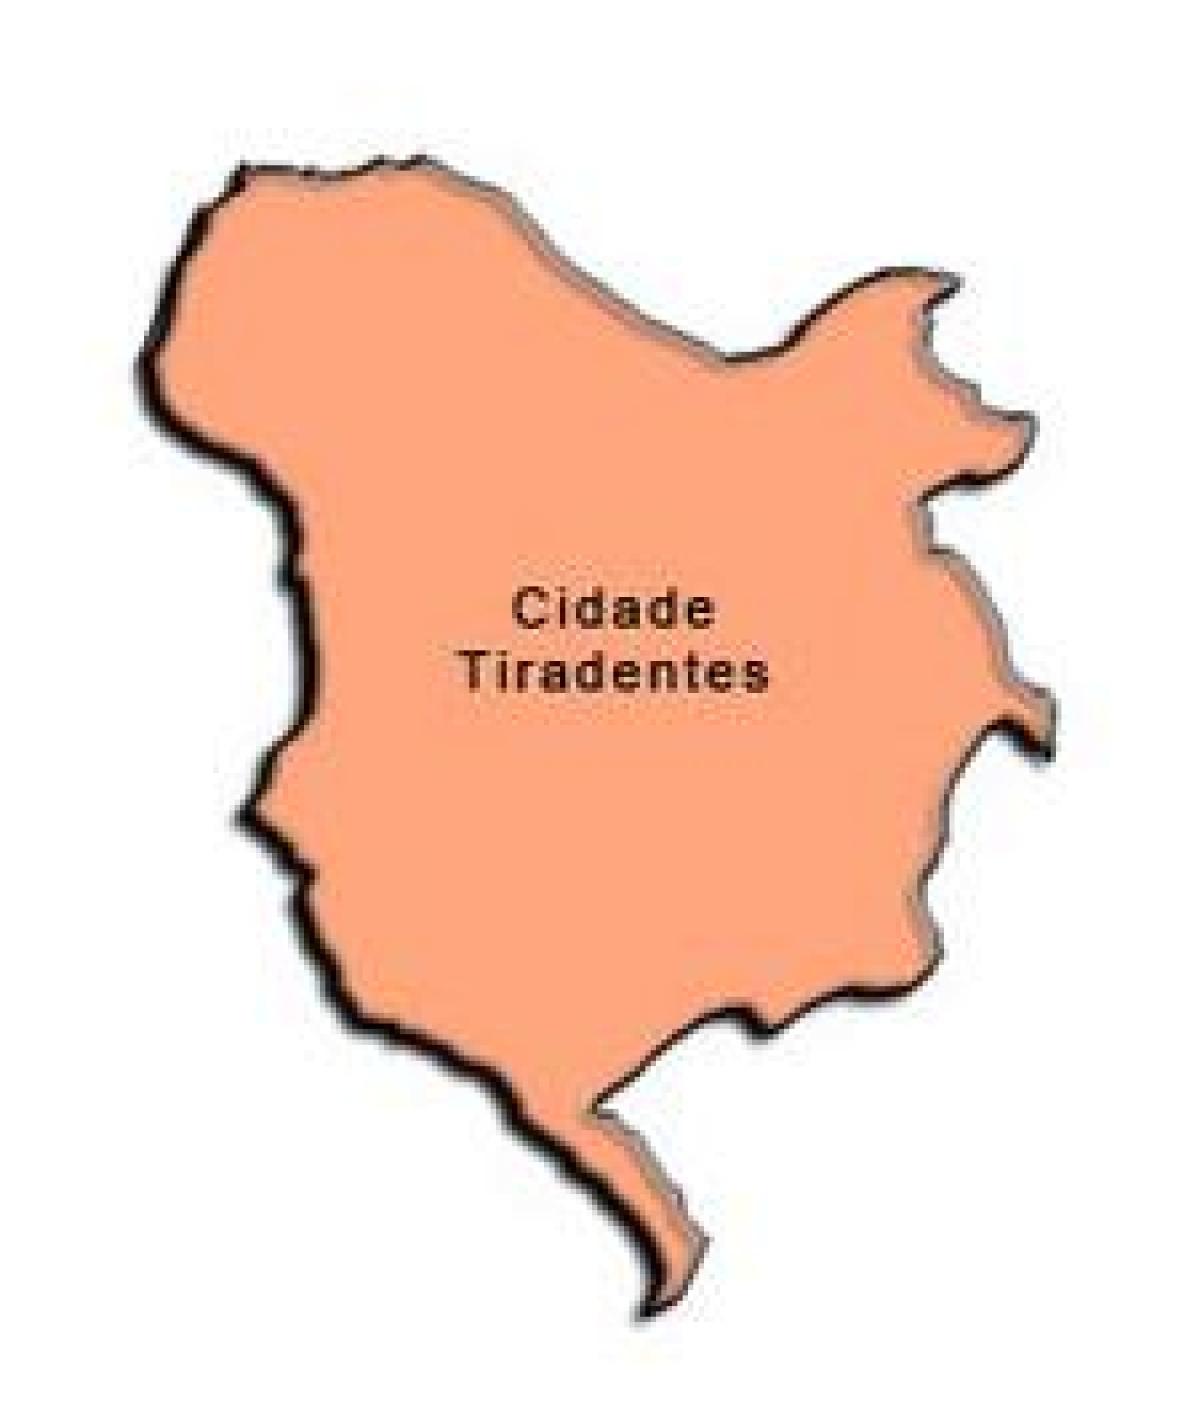 வரைபடம் Cidade Tiradentes சப்-fu